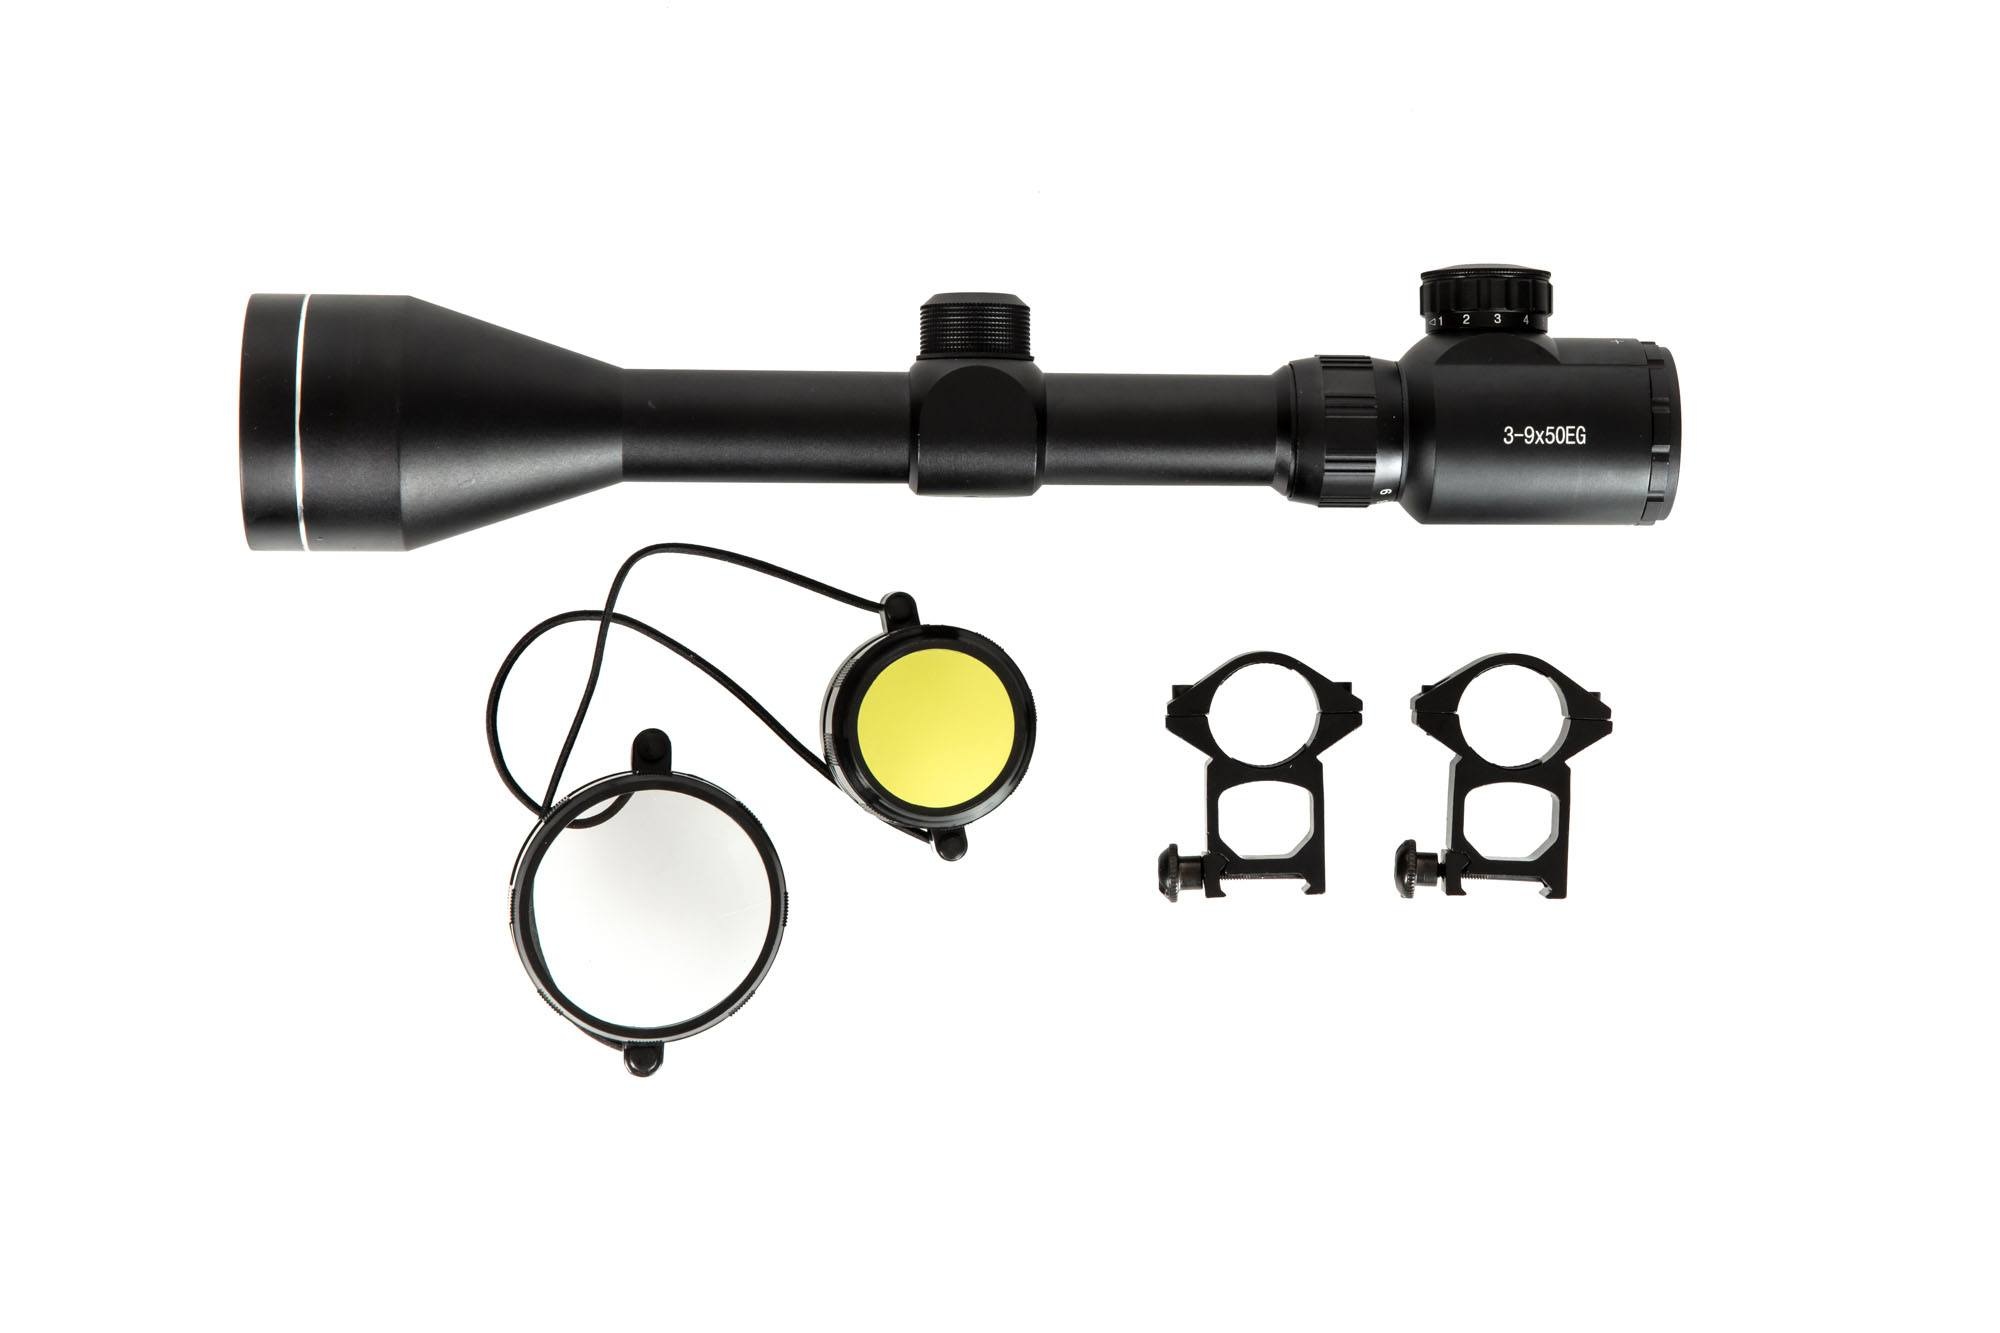 Theta Optics 3-9x50 rifle scope rangefinder illuminated - BK